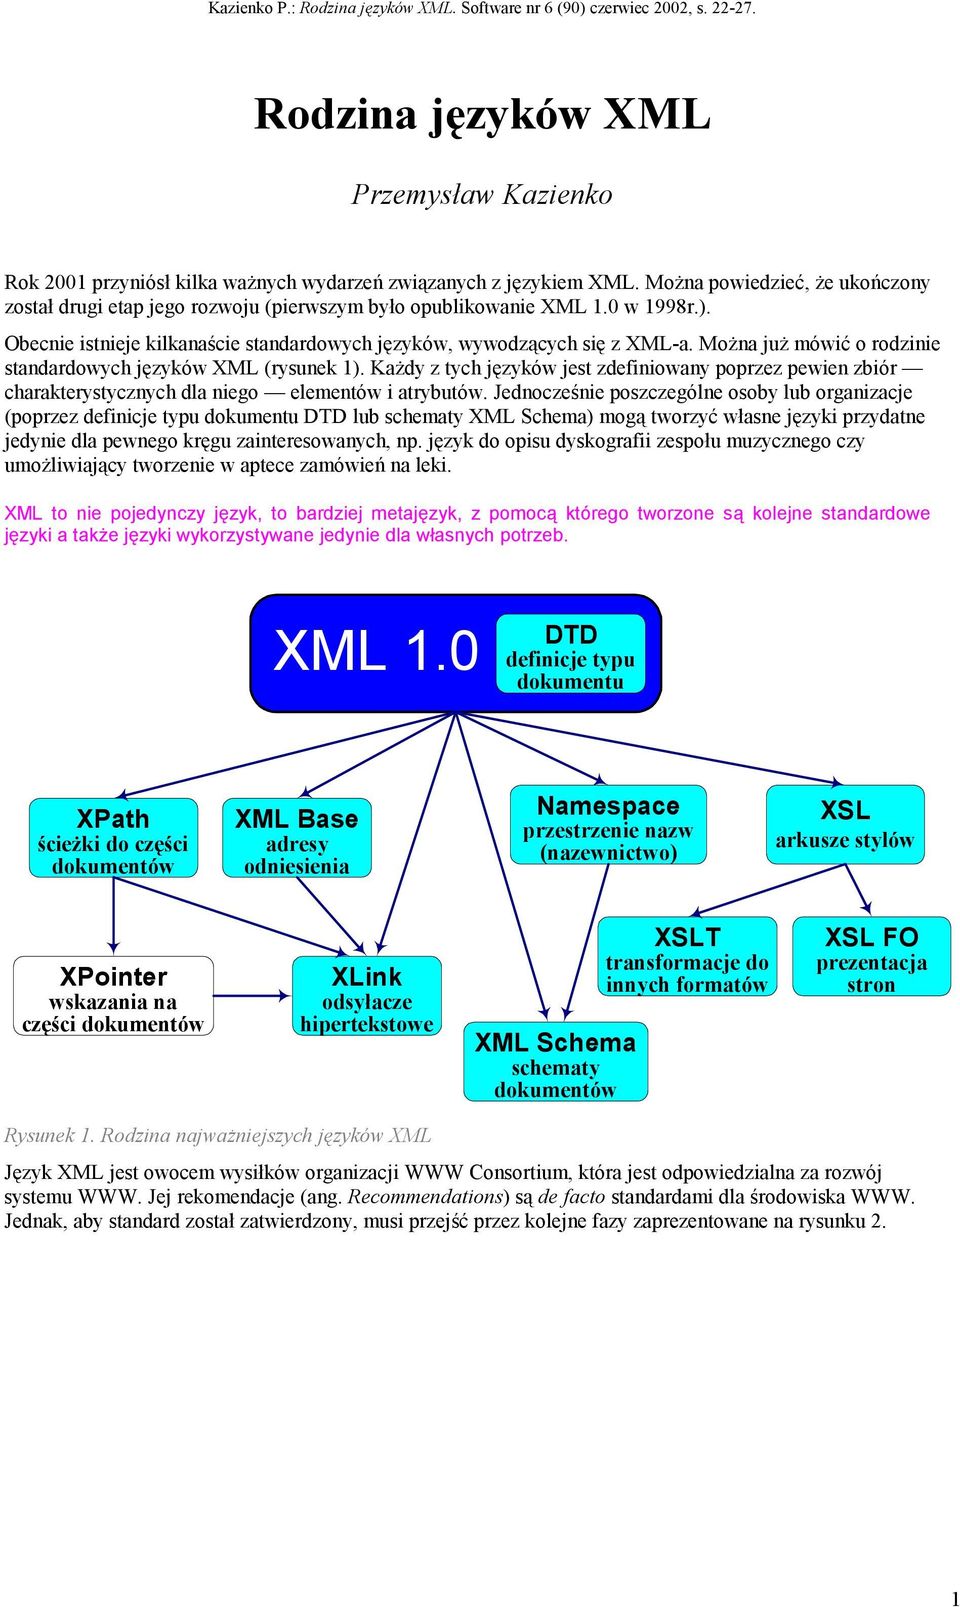 Można już mówić o rodzinie standardowych języków XML (rysunek 1). Każdy z tych języków jest zdefiniowany poprzez pewien zbiór charakterystycznych dla niego elementów i atrybutów.